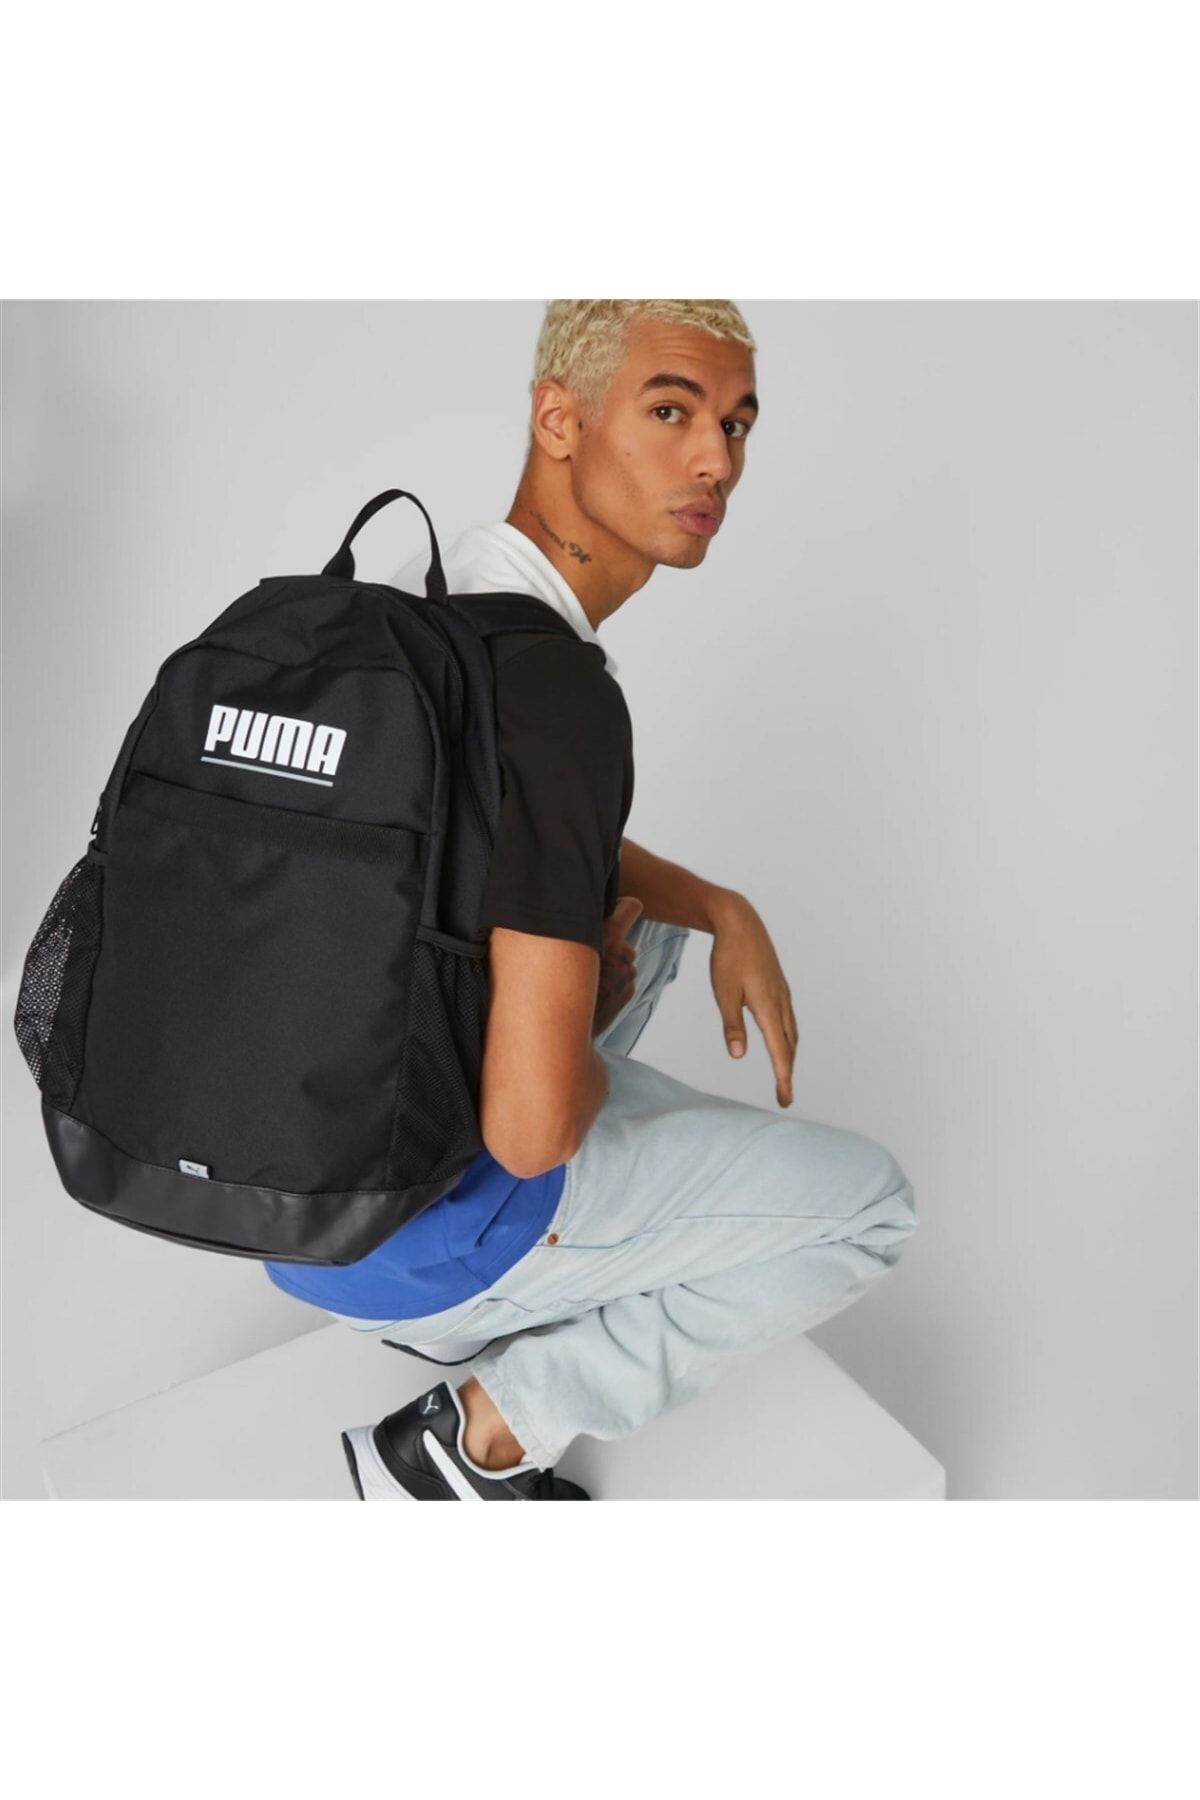 Puma Plus Backpack Black Backpack - 079615-01 Trendyol